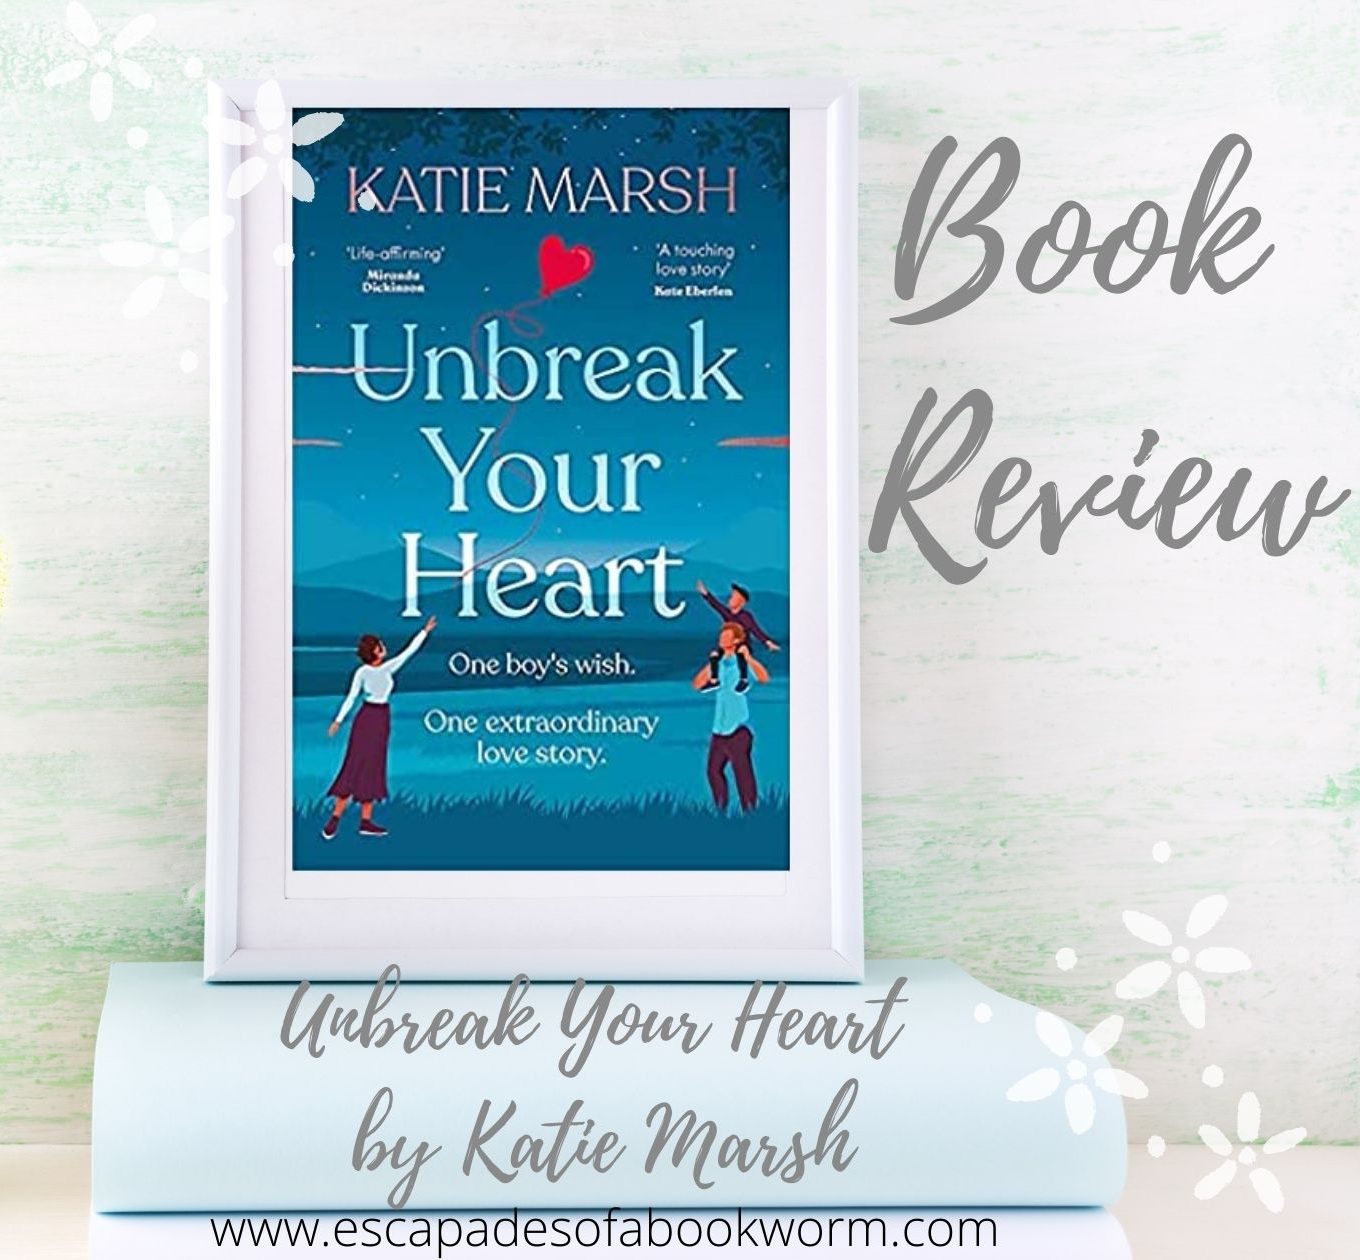 Unbreak Your Heart by Katie Marsh